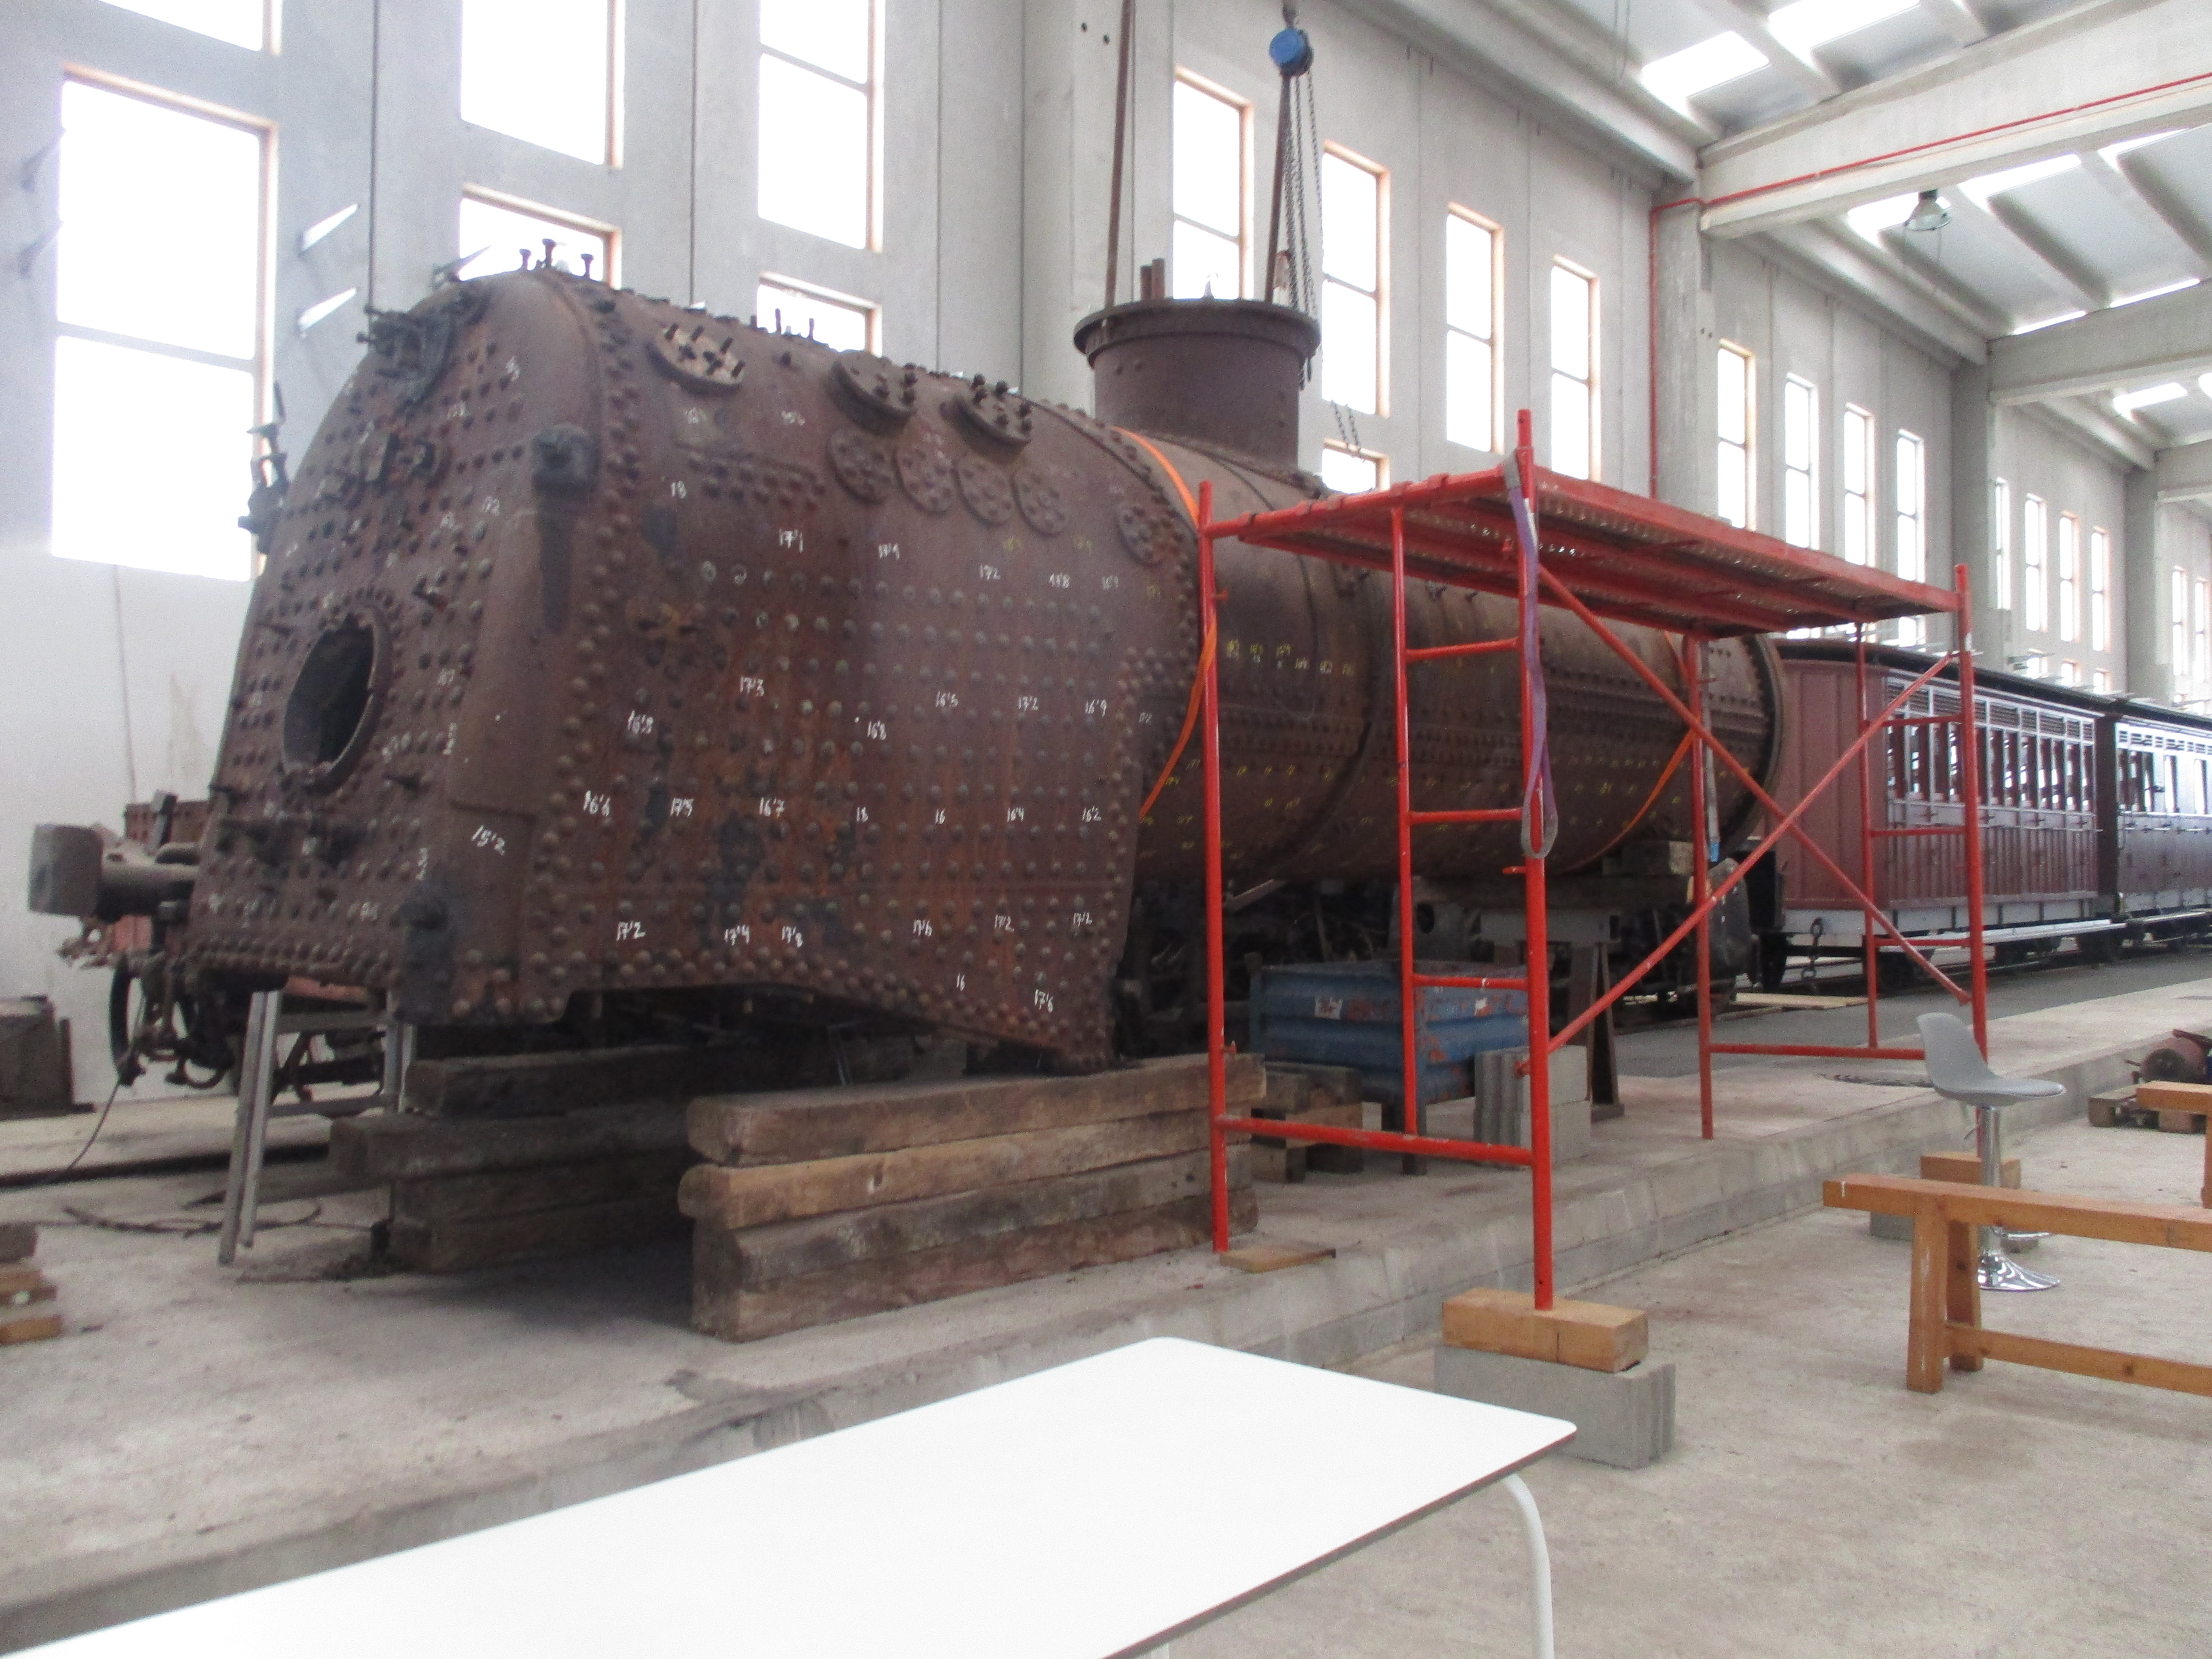 Locomotora de vapor en fase de restauració